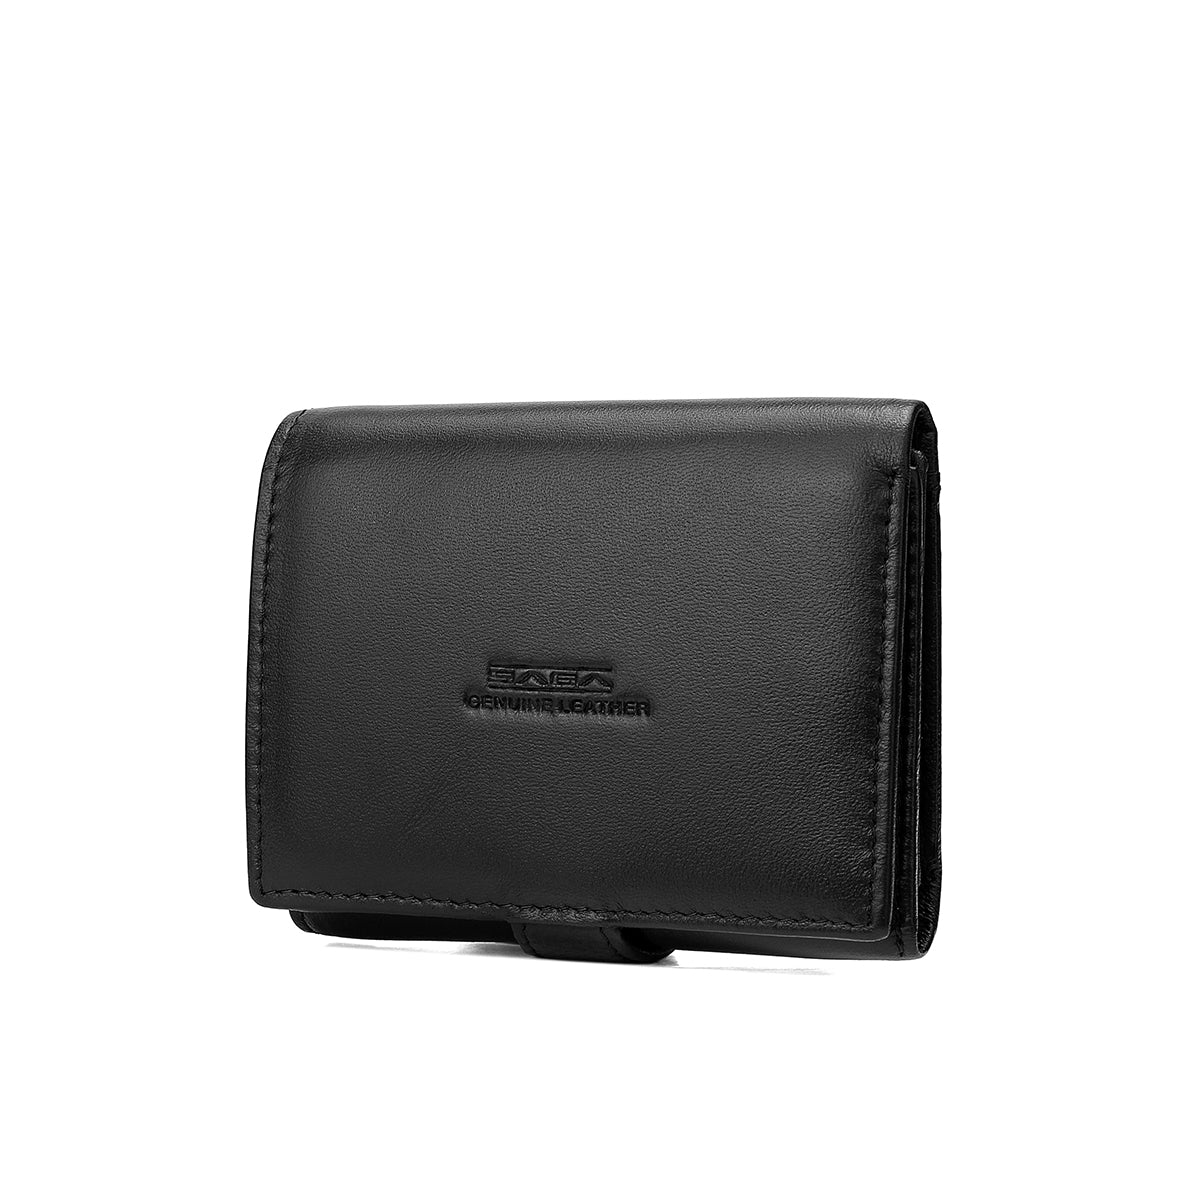 Men's wallet with elegant design, original genuine leather, black or brown